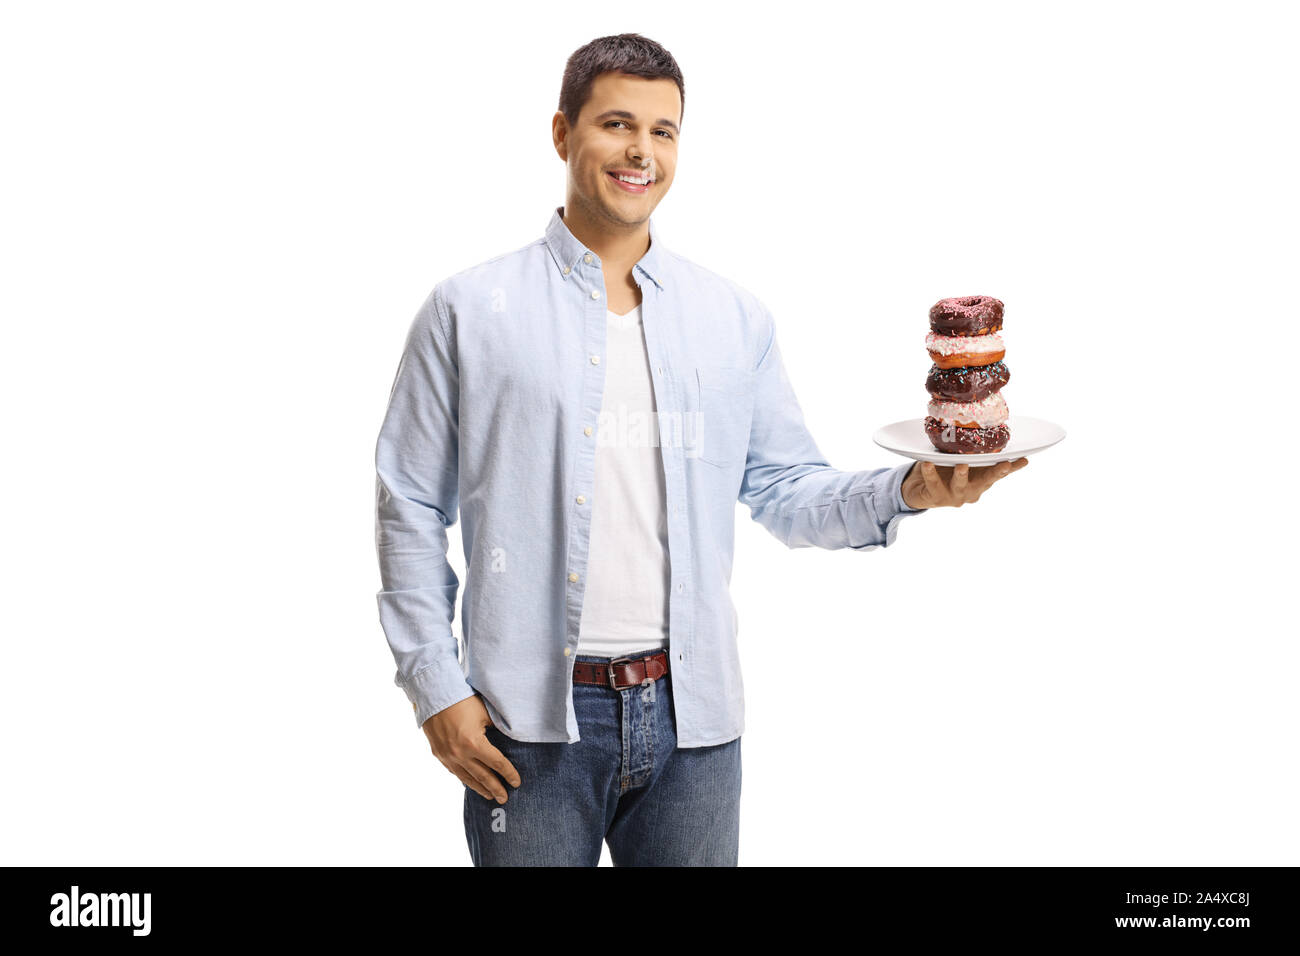 Junge Mann hält einen Teller mit Donuts und lächelnd auf weißem Hintergrund Stockfoto